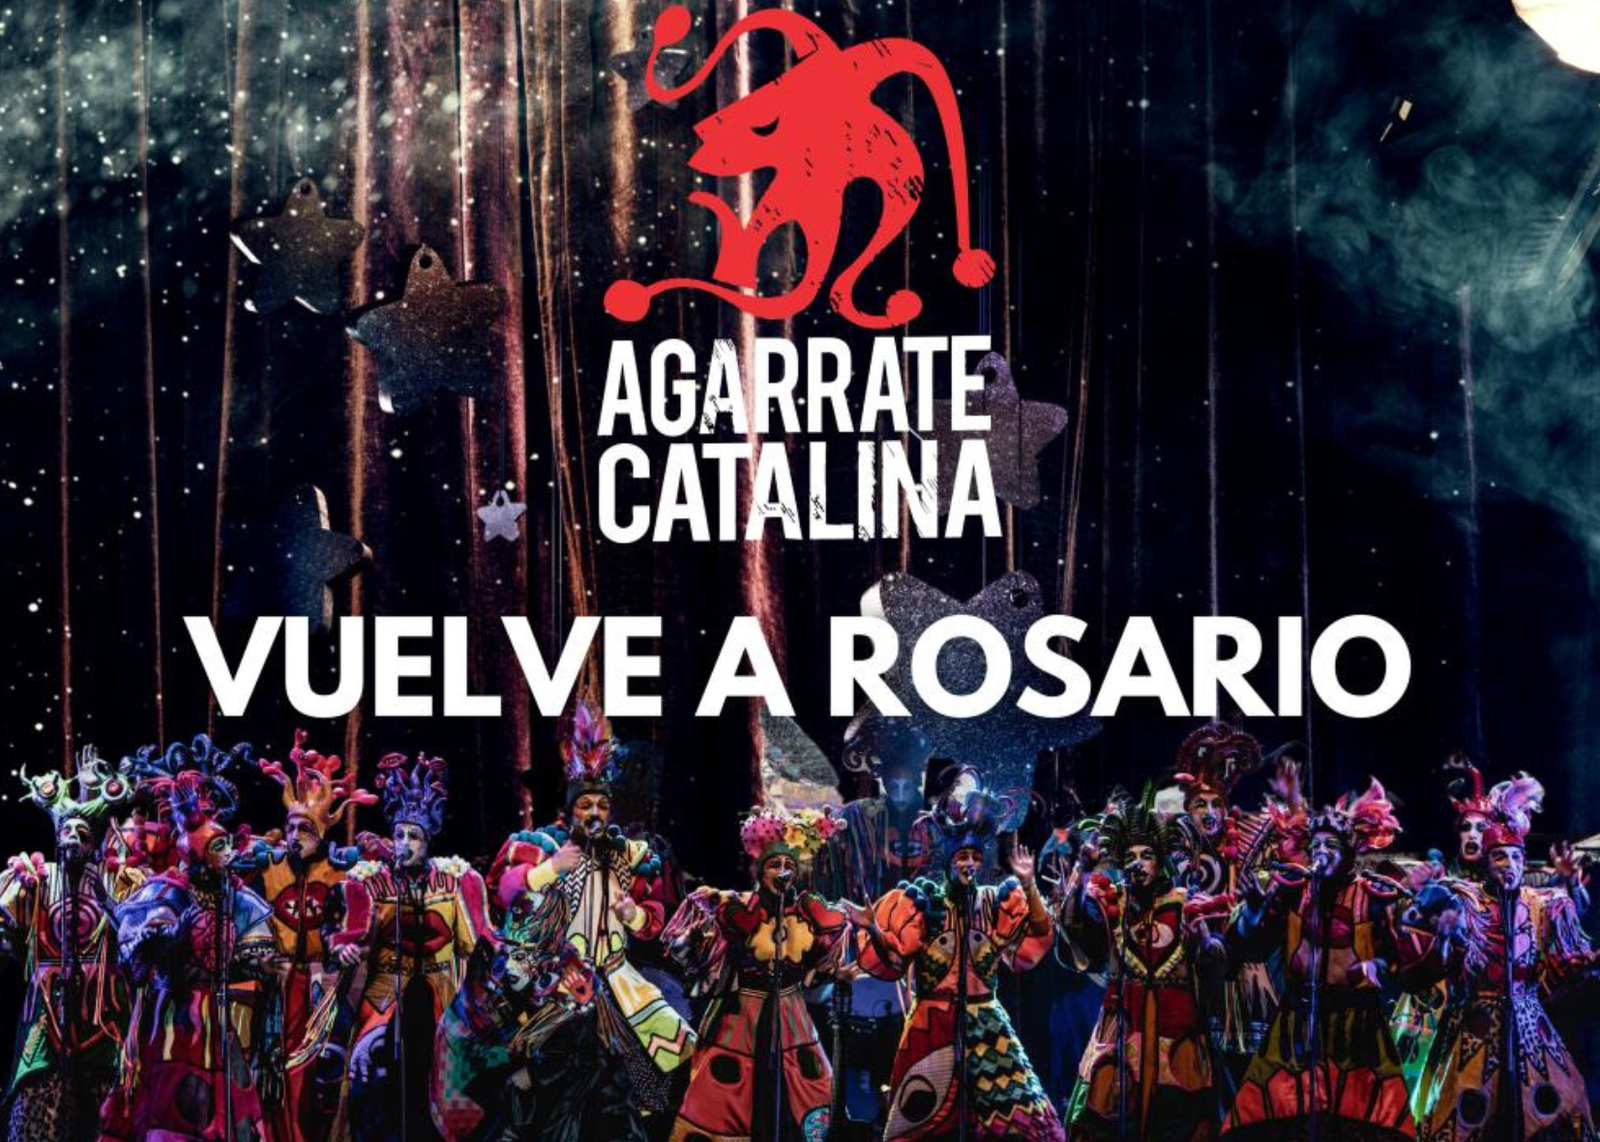 AGARRATE CATALINA vuelve a Rosario